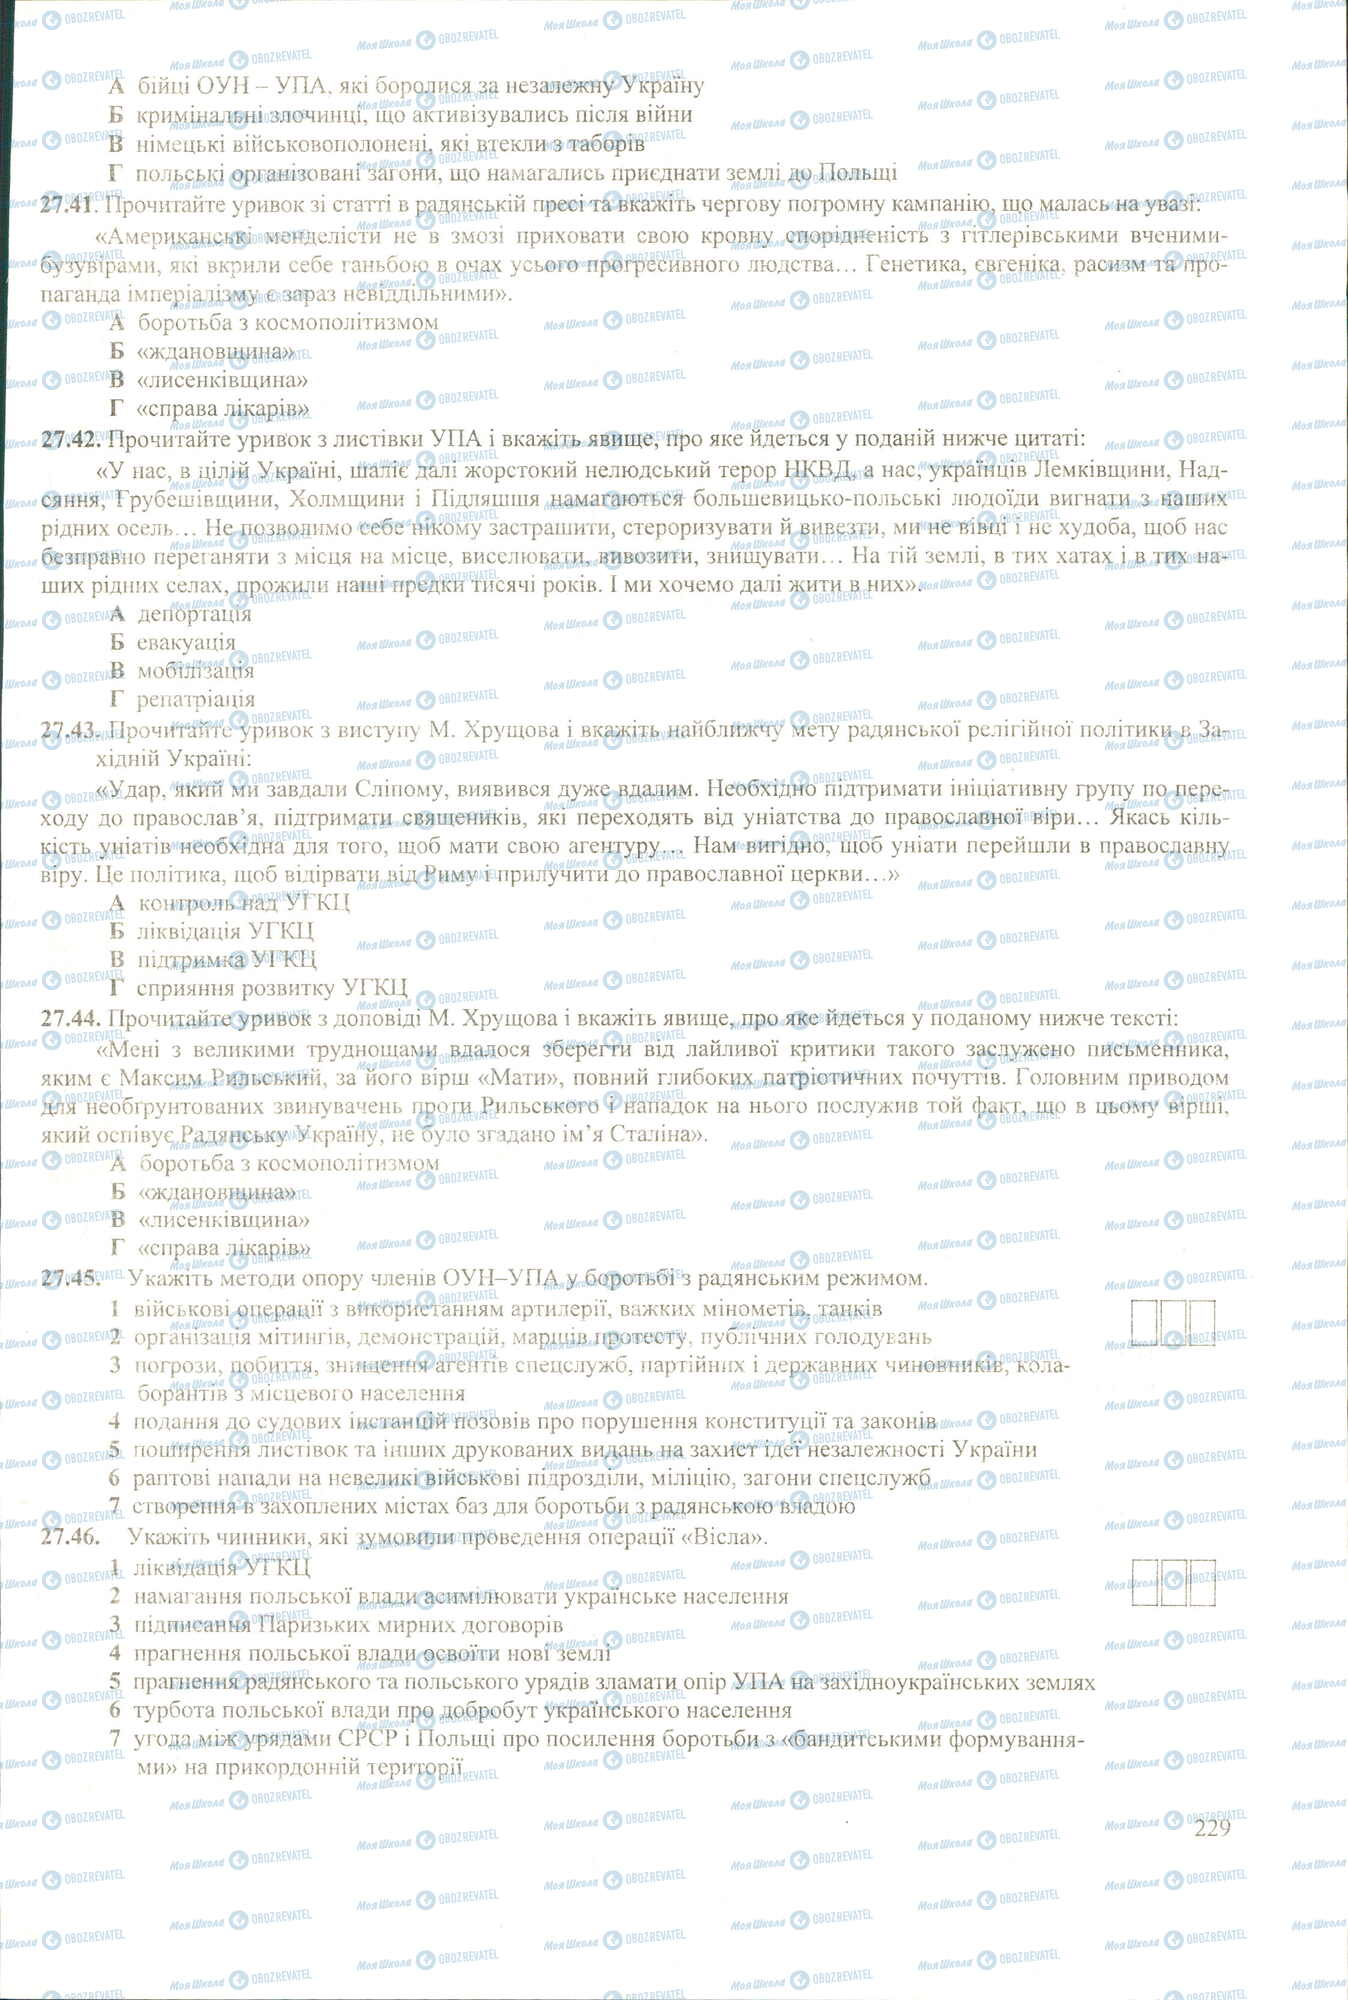 ЗНО История Украины 11 класс страница 41-46